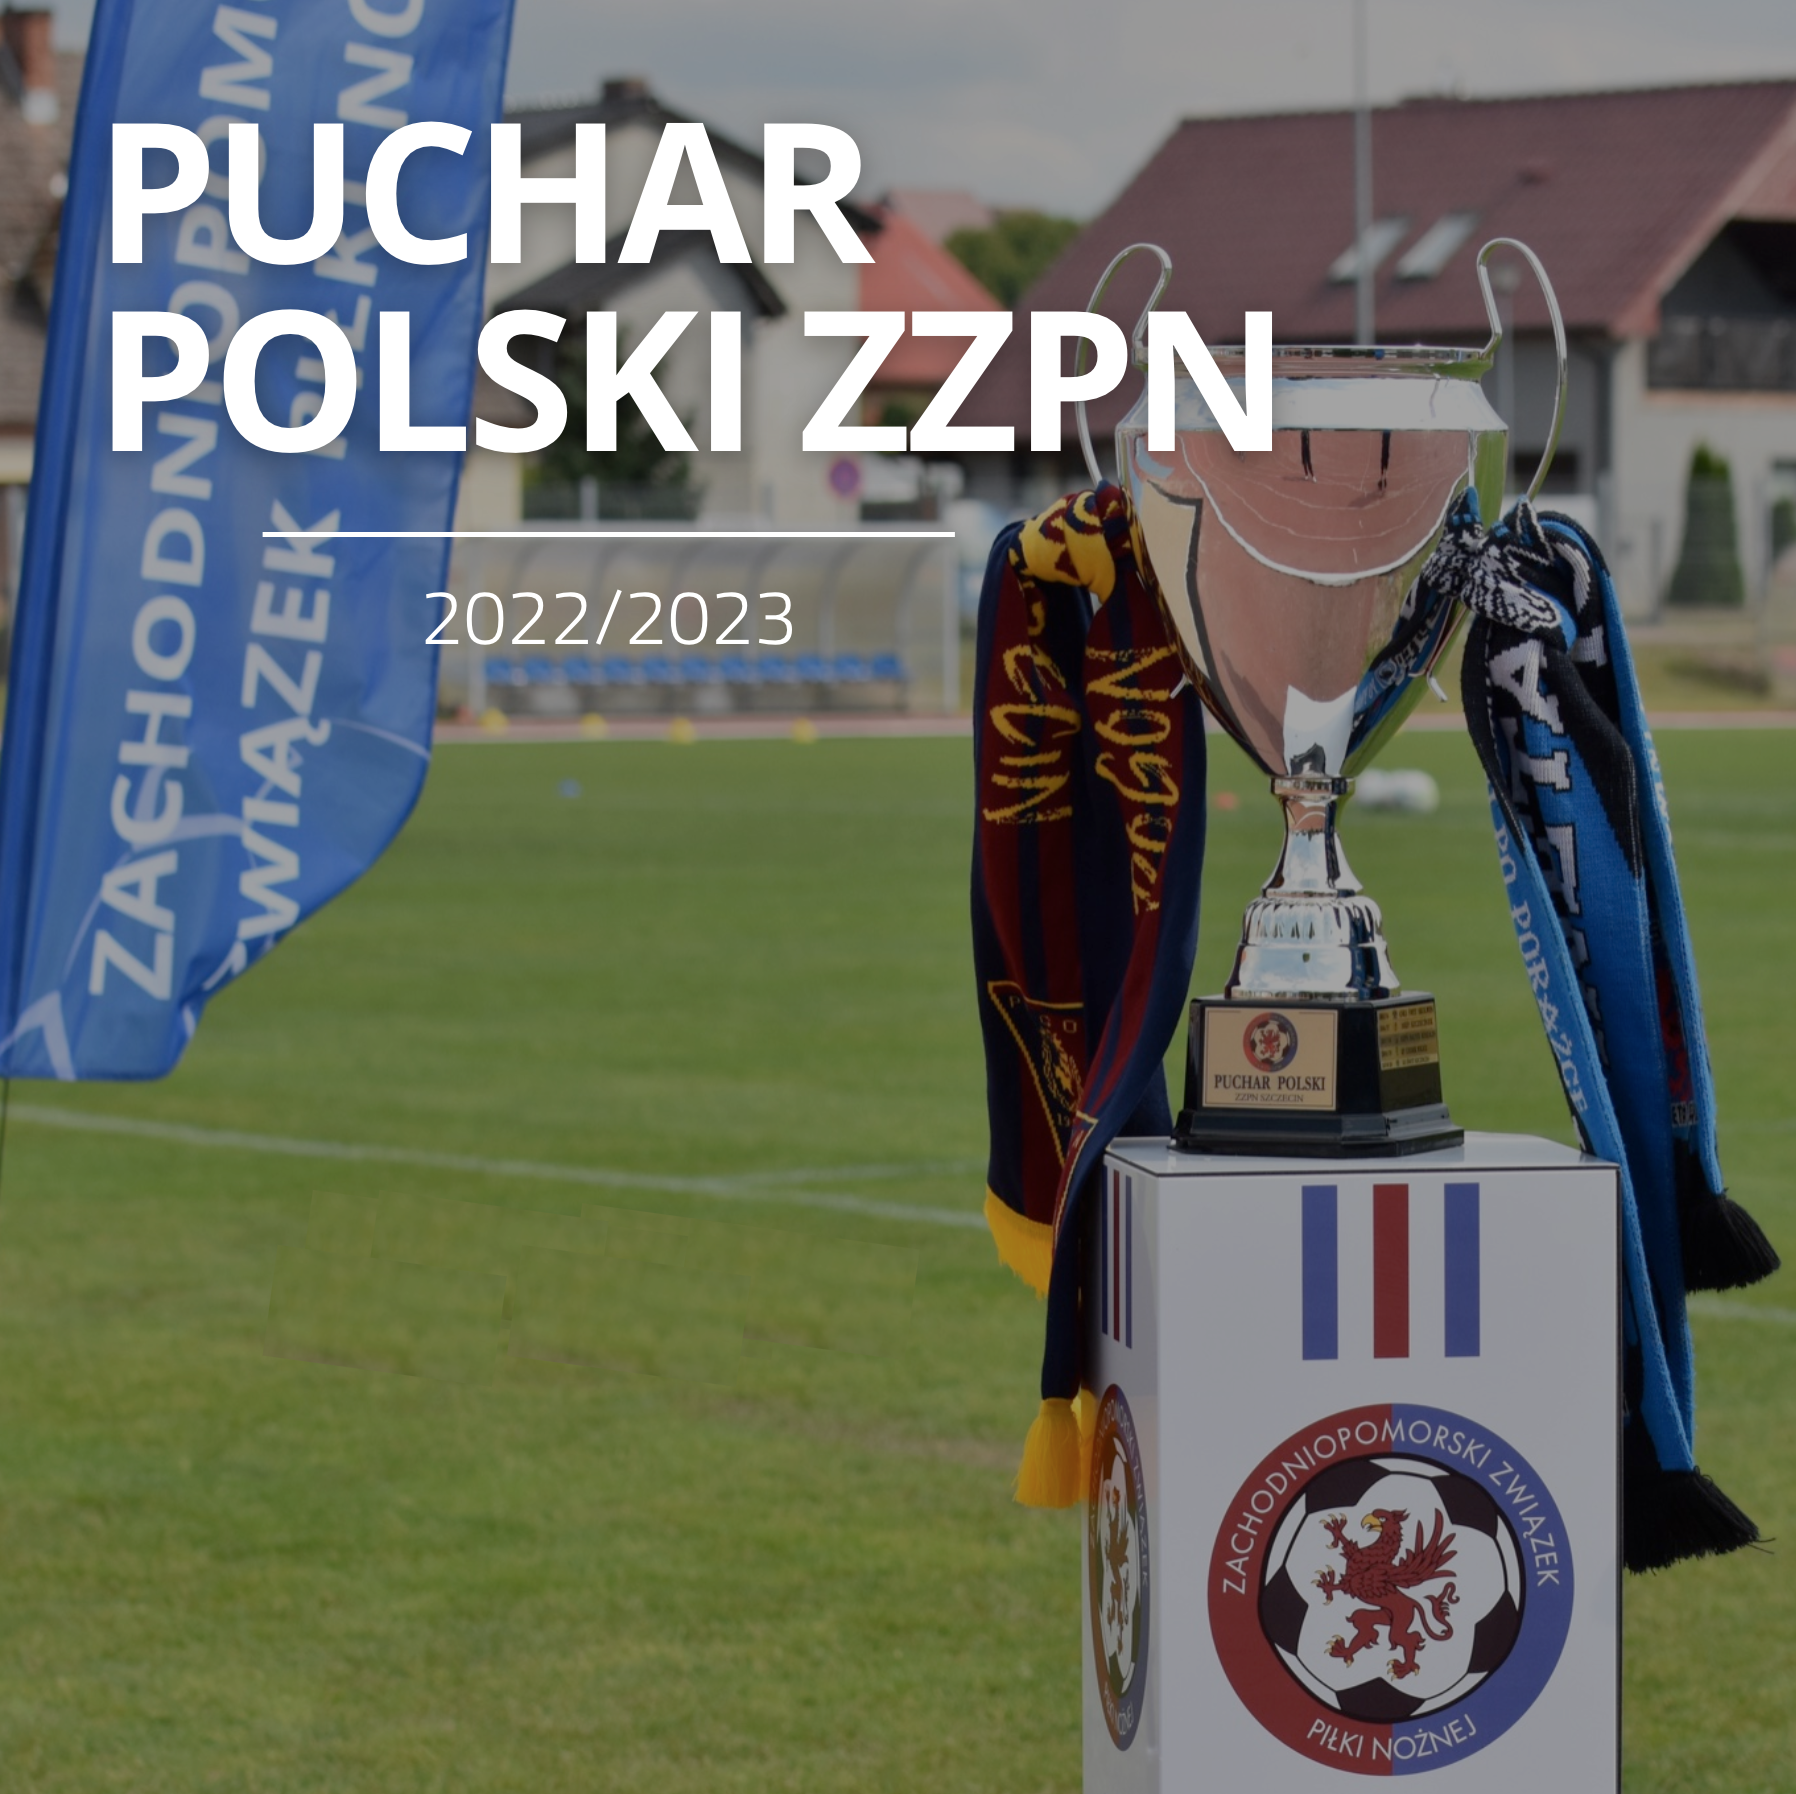 Puchar Polski ZZPN - zapowiedź 4 rundy (gr. Szczecin) i 3 (gr. Koszalin)